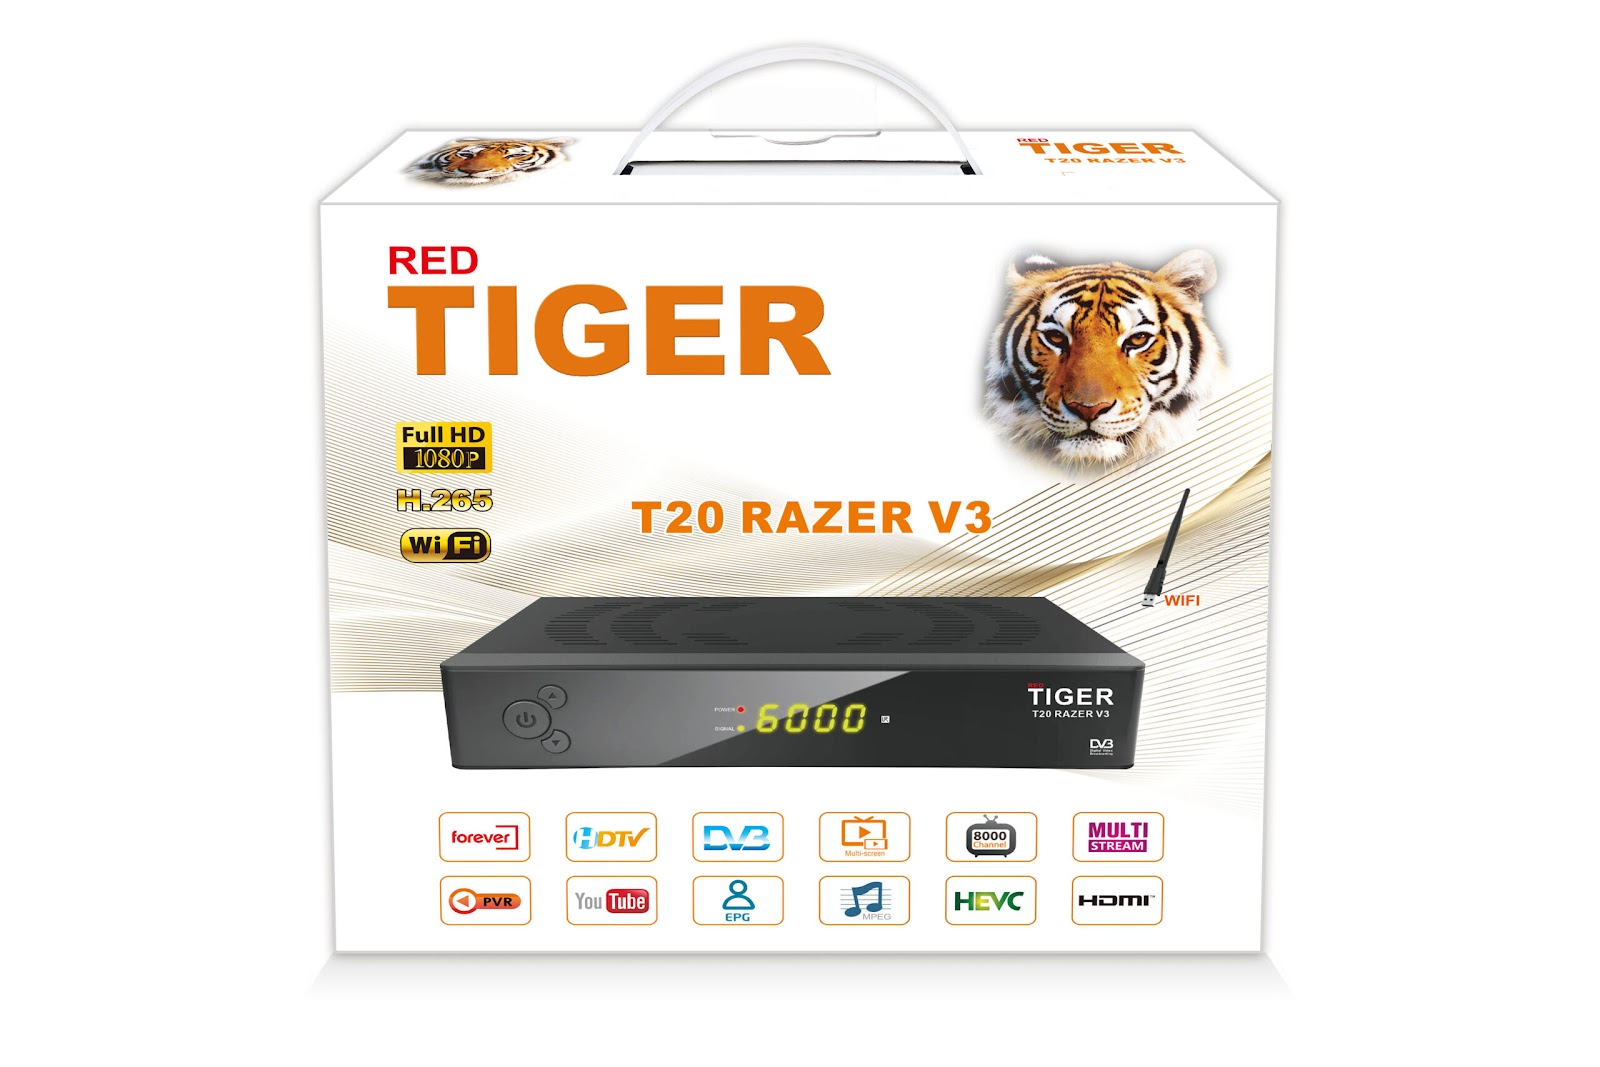 TIGER T20 RAZER V3 NEW SOFTWARE VER 1.07 RELEASED ON 24 APRIL 2023